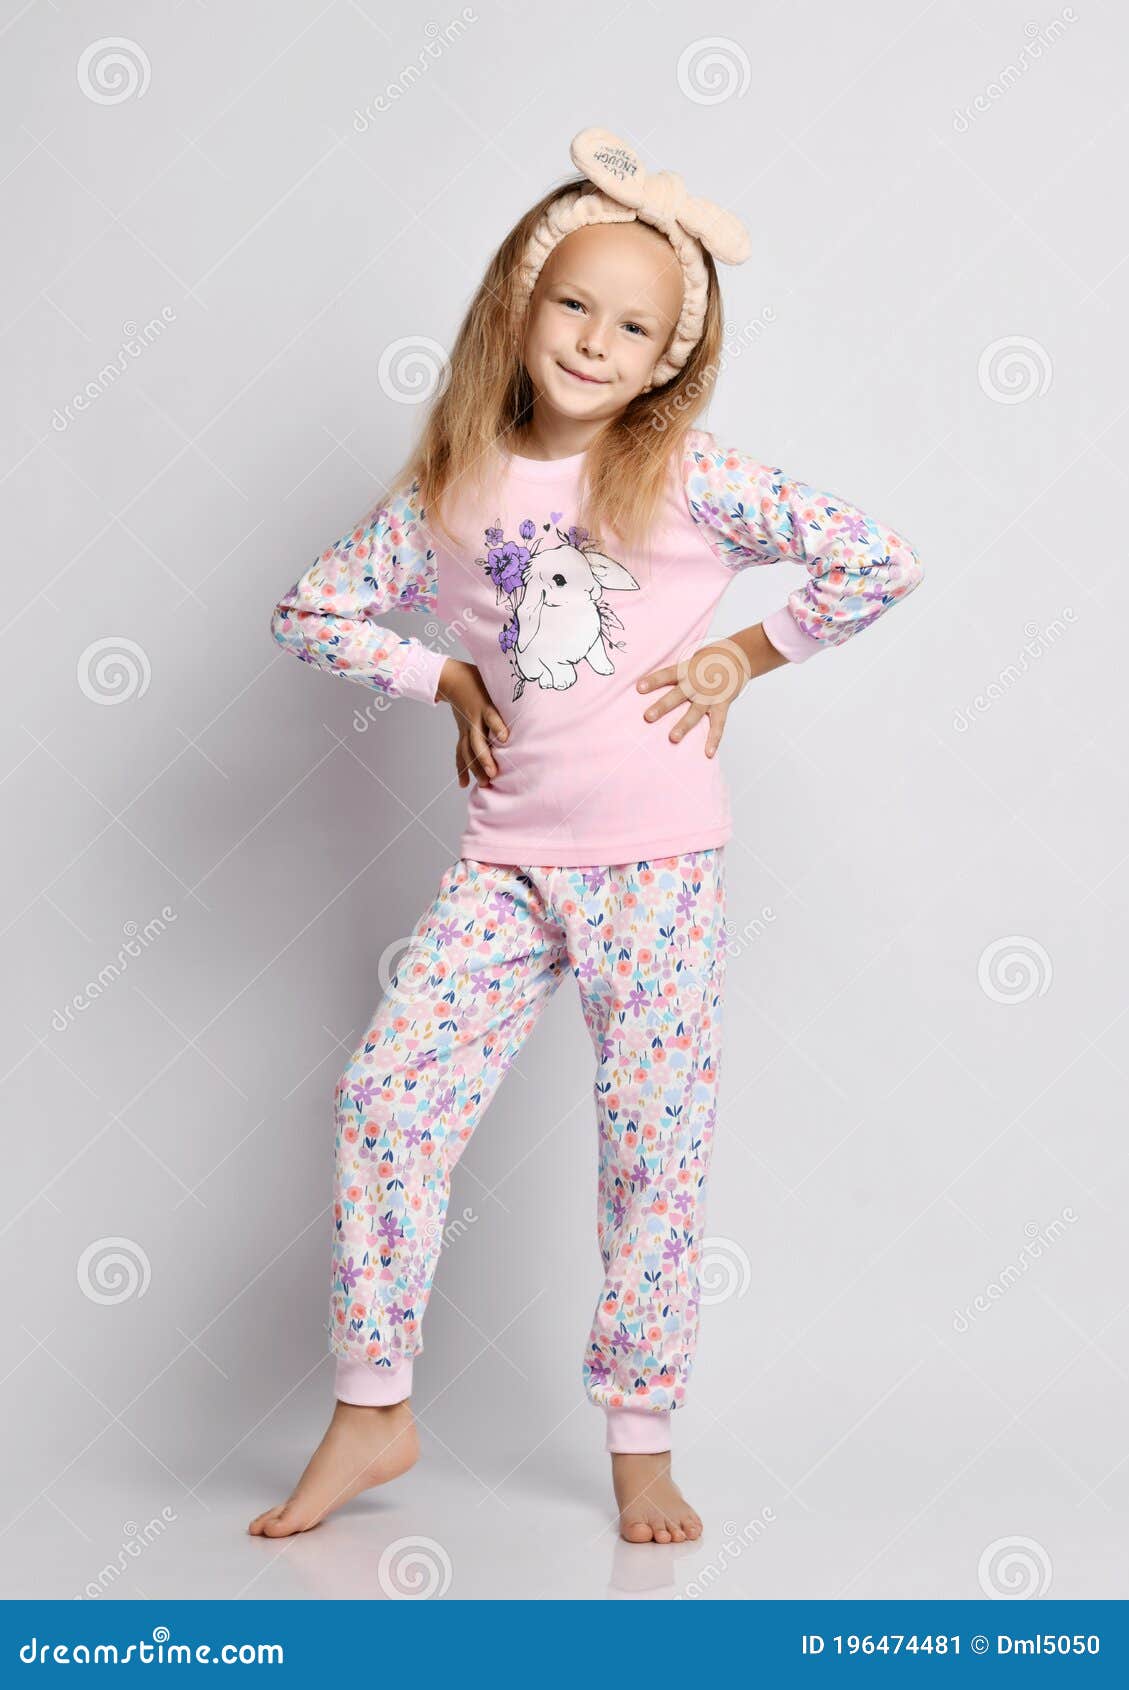 Niña Rubia Y Mona Sonriente Con Camisa Elegante Y Pijama Pantalones Con Estampado De Flores Se Pone De La Mano En La Cintura Imagen de archivo - de descalzo, rosa: